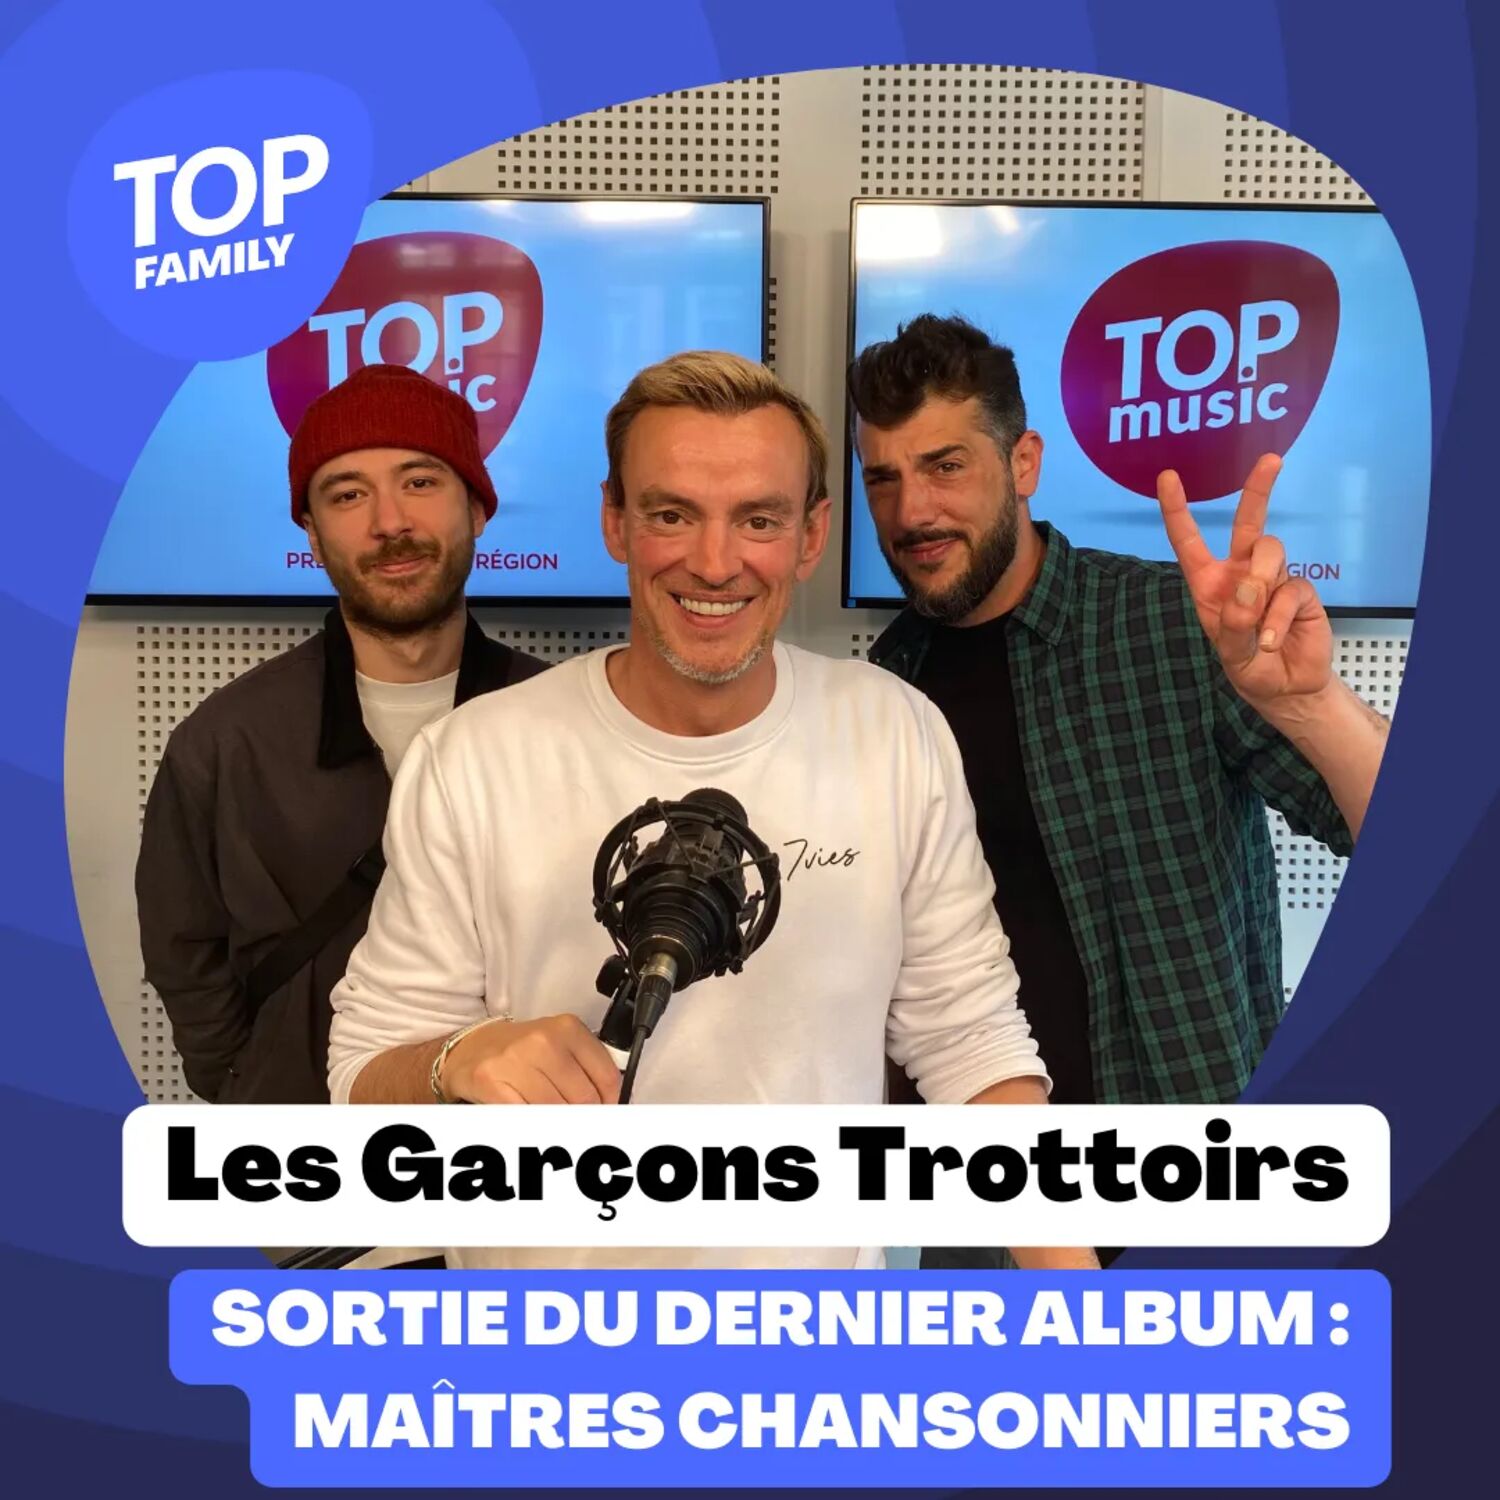 Top Family - Les Garçons Trottoirs, groupe incontournable en Alsace